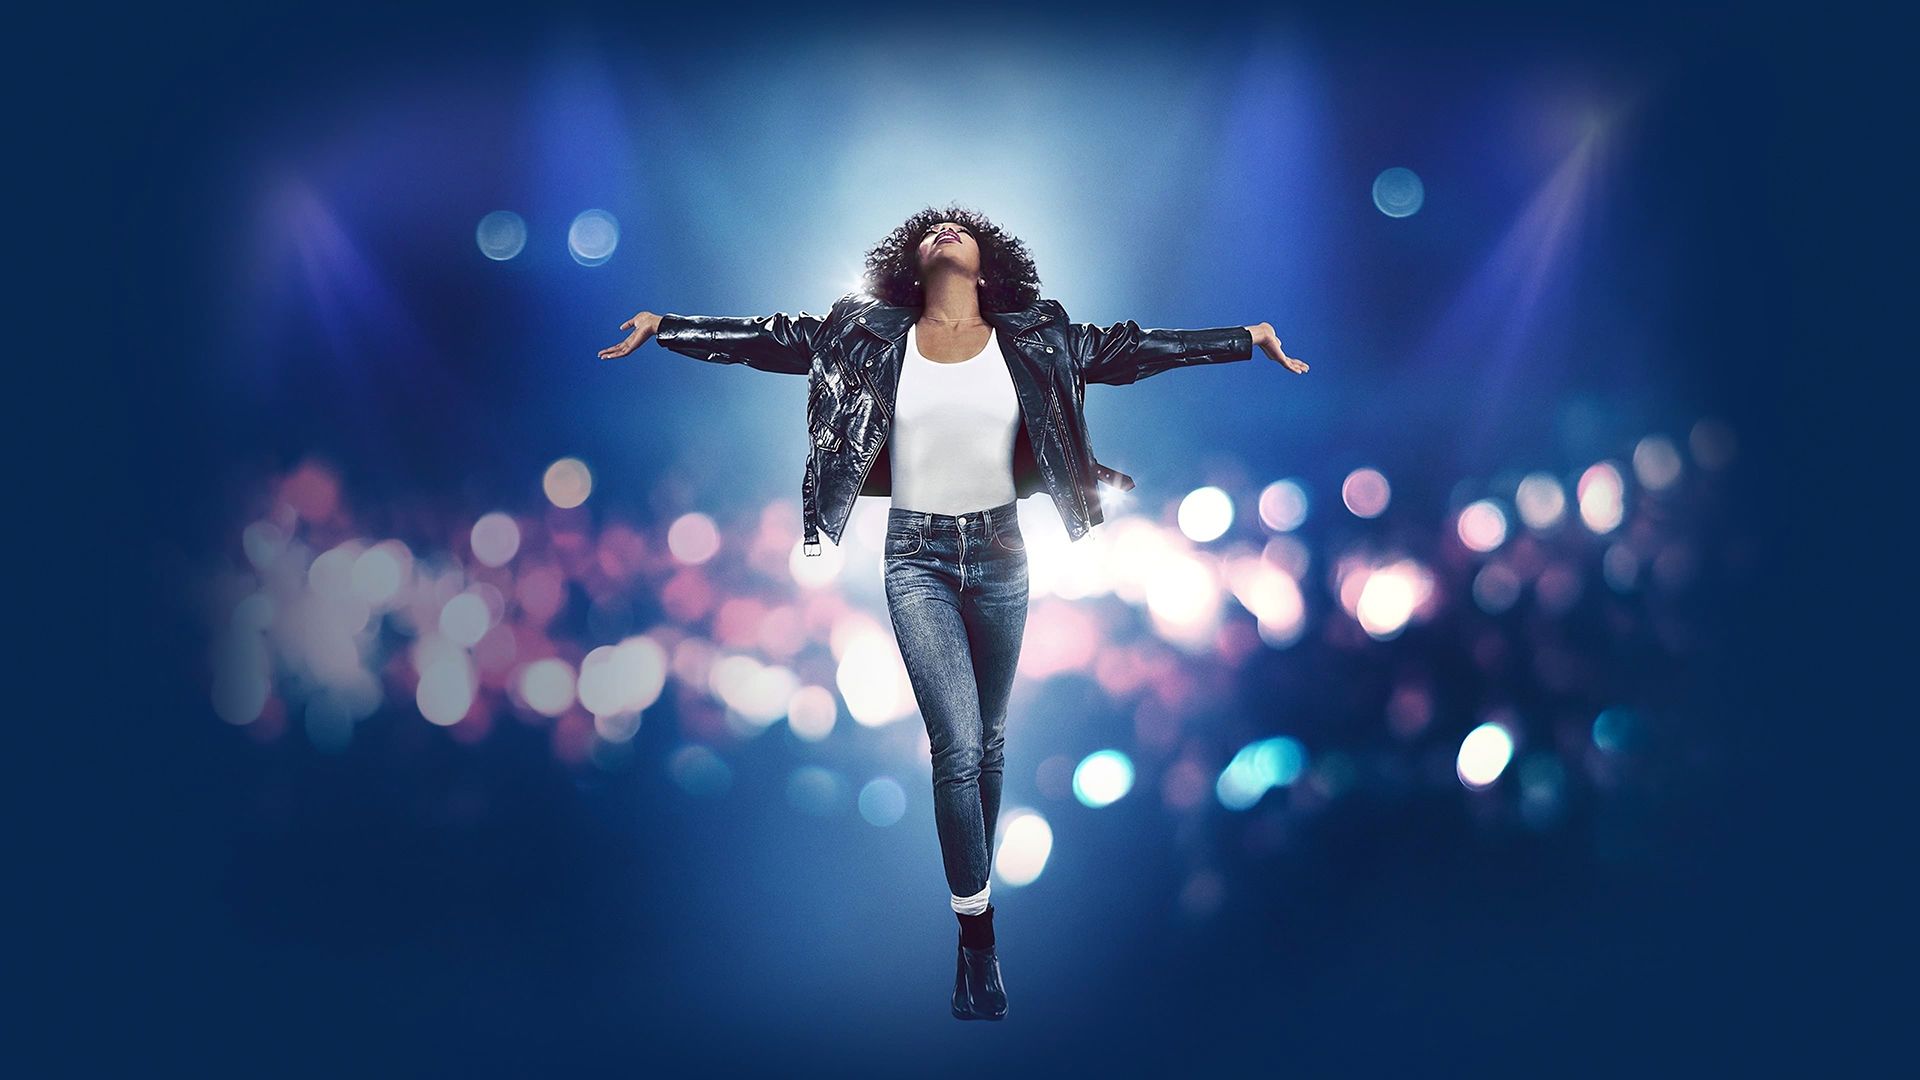 Whitney Houston: I Wanna Dance with Somebody background